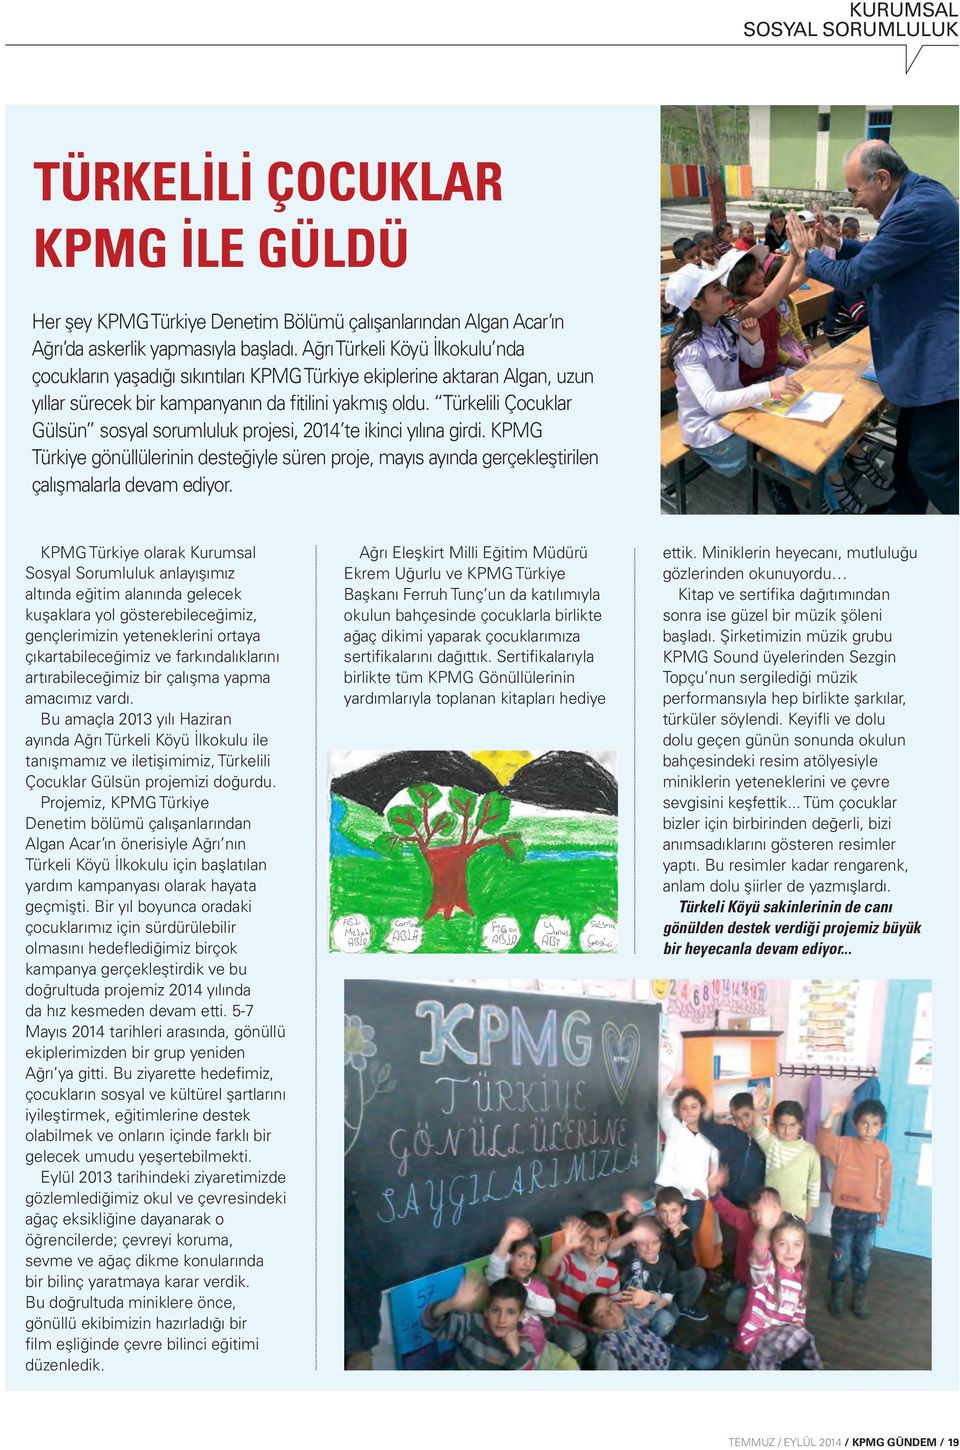 Türkelili Çocuklar Gülsün sosyal sorumluluk projesi, 2014 te ikinci yılına girdi. KPMG Türkiye gönüllülerinin desteğiyle süren proje, mayıs ayında gerçekleştirilen çalışmalarla devam ediyor.